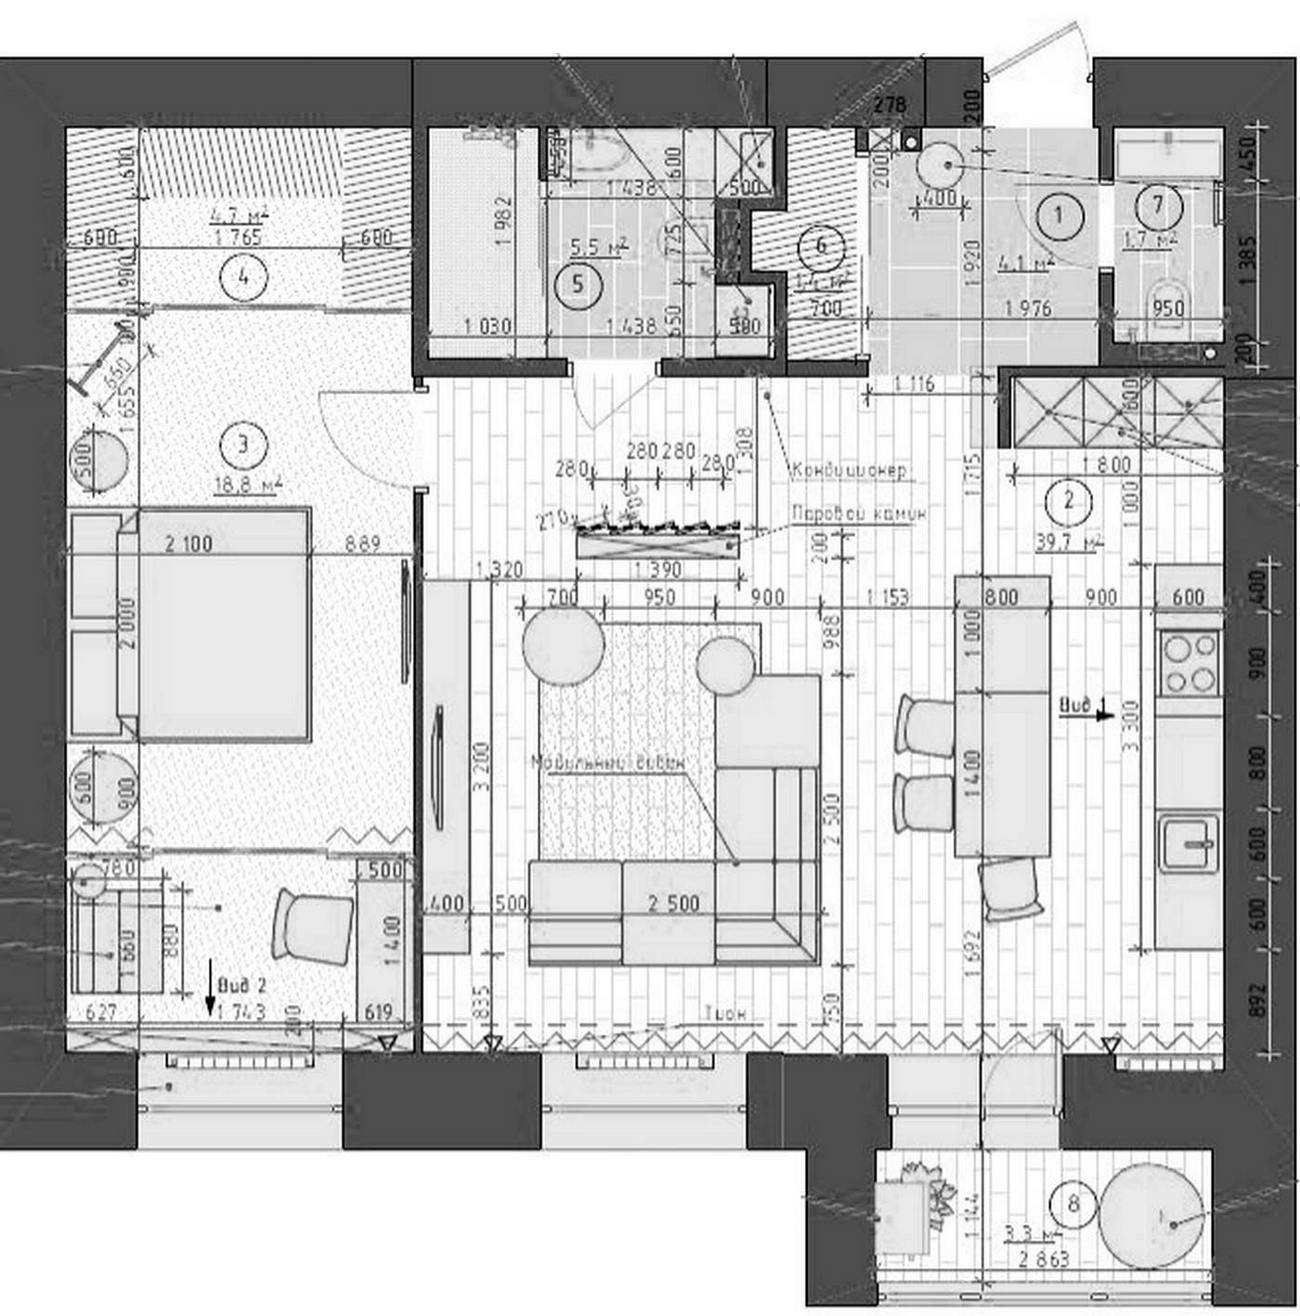 Különleges kerek fekete üveg konyha hátfal 76m2-es lakásban, lakberendezés látványos elemekkel